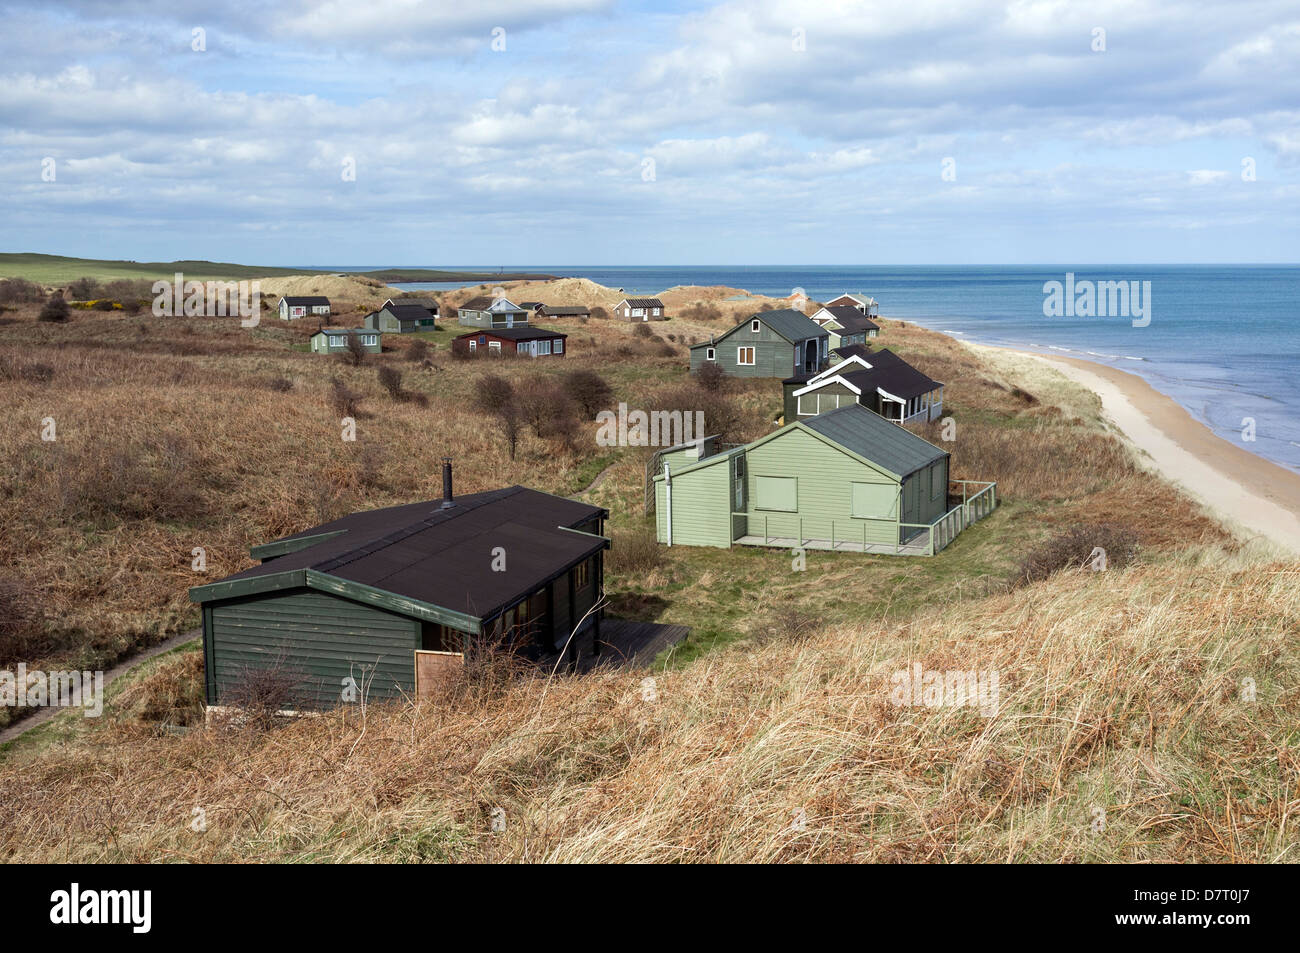 Estate in legno case sulle dune di sabbia a Dunstanburgh, Northumberland, England, Regno Unito Foto Stock